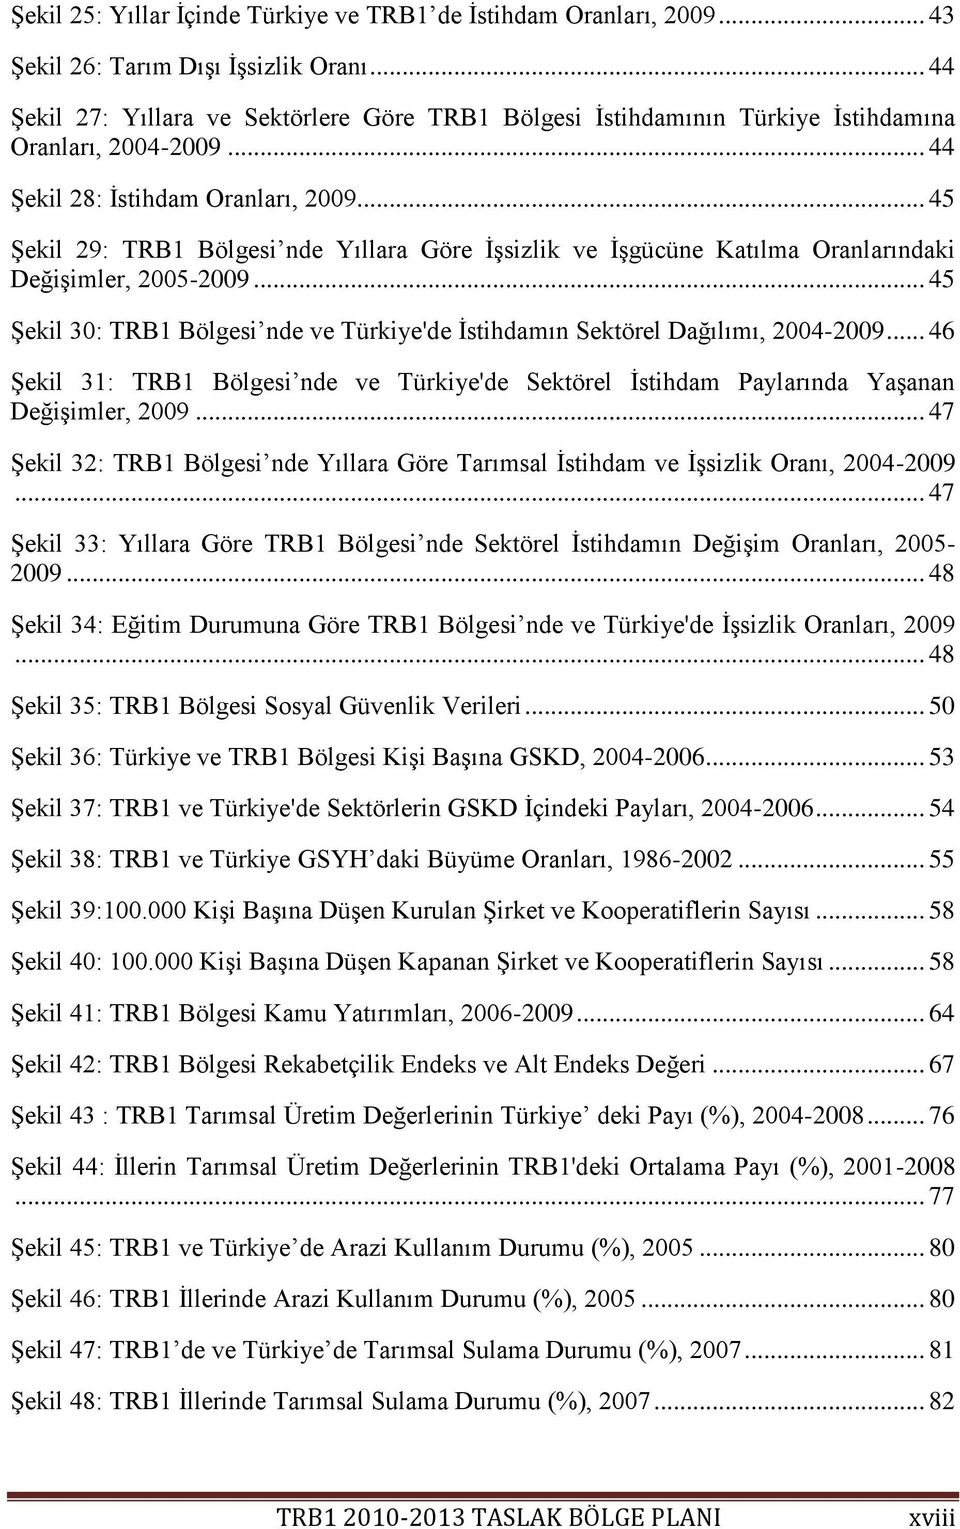 .. 45 ġekil 29: TRB1 Bölgesi nde Yıllara Göre ĠĢsizlik ve ĠĢgücüne Katılma Oranlarındaki DeğiĢimler, 2005-2009... 45 ġekil 30: TRB1 Bölgesi nde ve Türkiye'de Ġstihdamın Sektörel Dağılımı, 2004-2009.